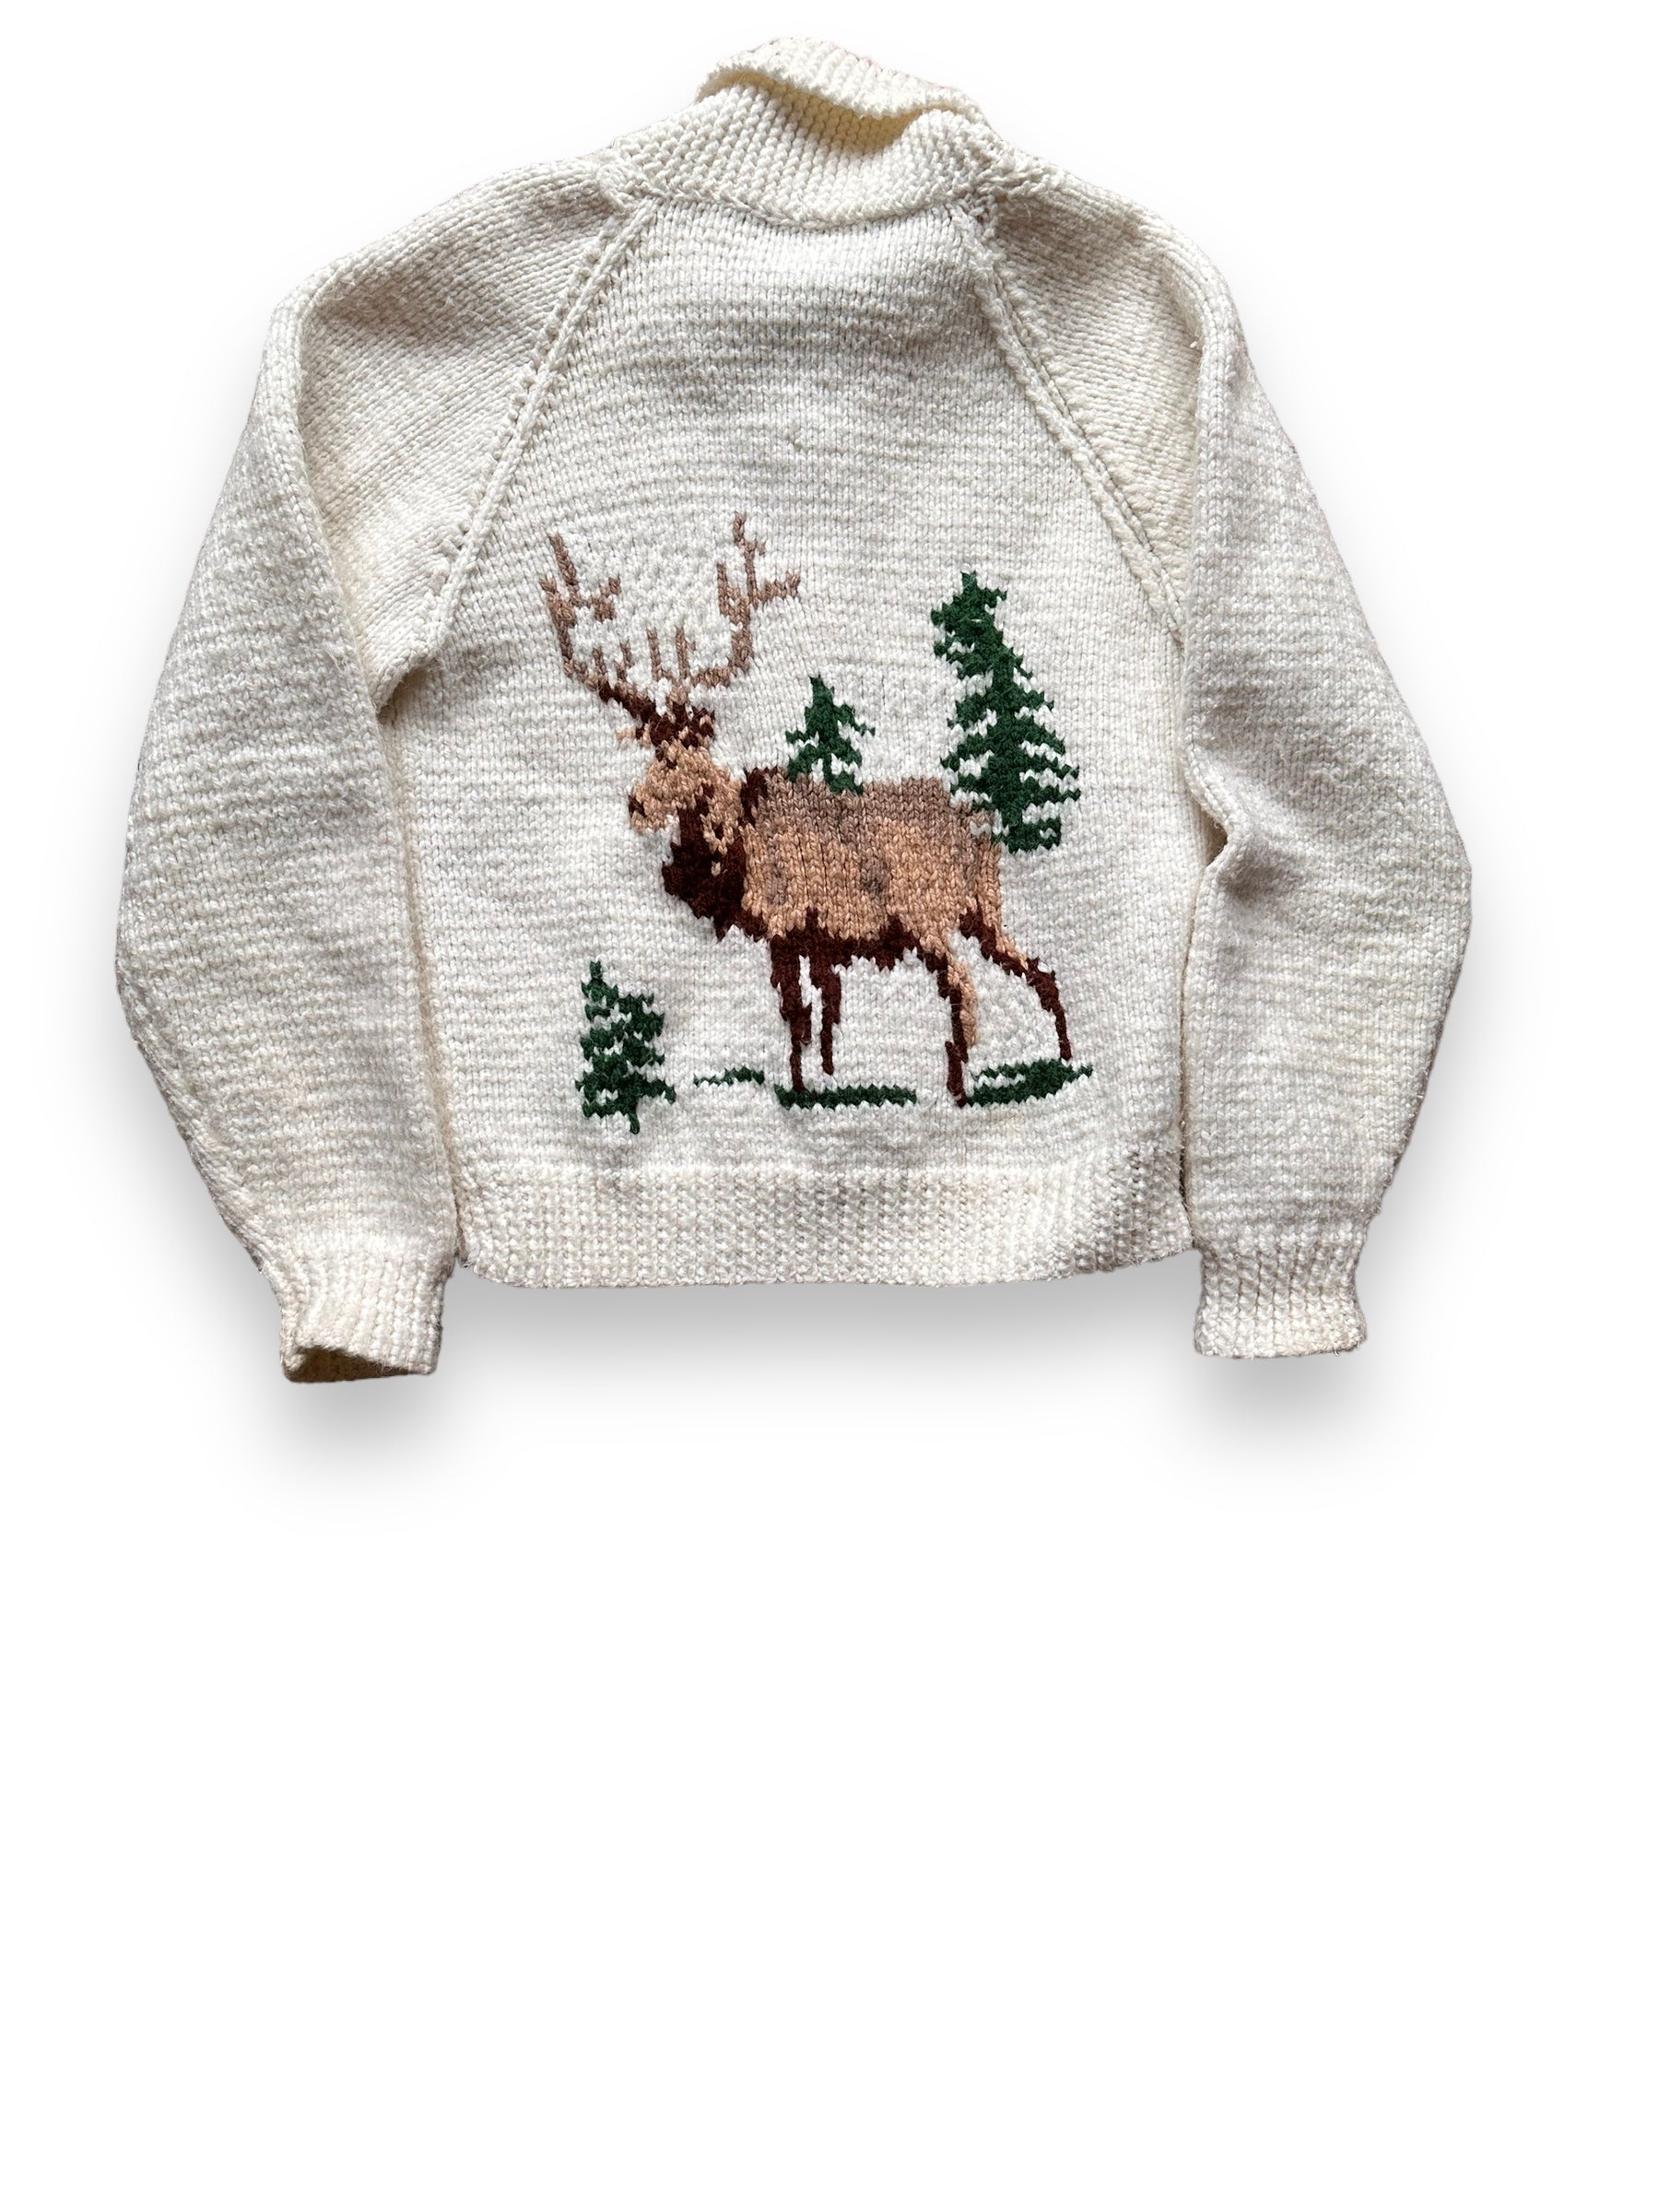 Rear View of Vintage Deer Wool Cowichan Style Sweater SZ M | Vintage Cowichan Sweaters Seattle | Barn Owl Vintage Seattle